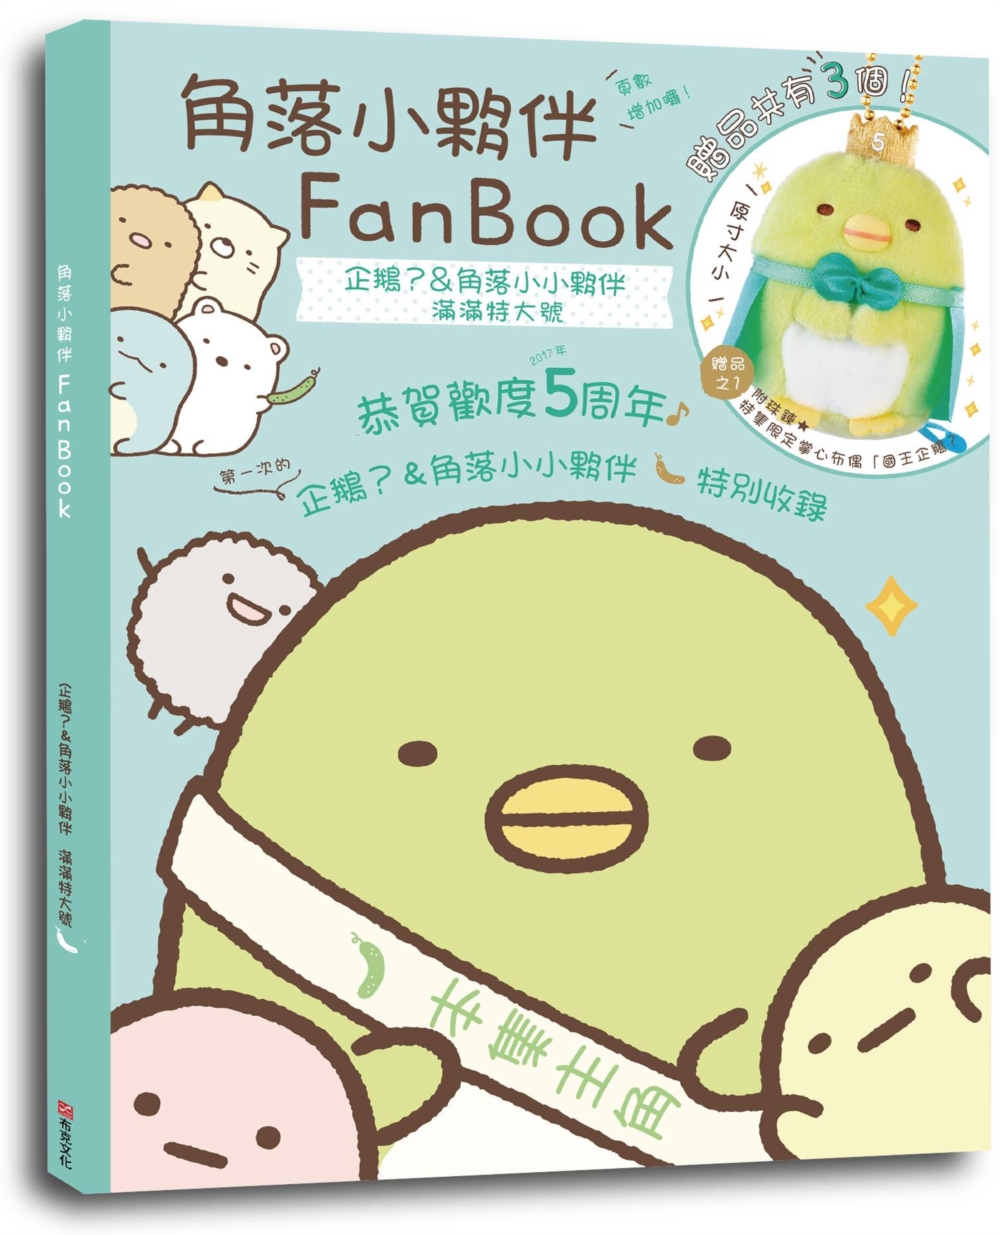 角落小夥伴FanBook：企鵝?&角落小小夥伴 滿滿特大號(角落生物)